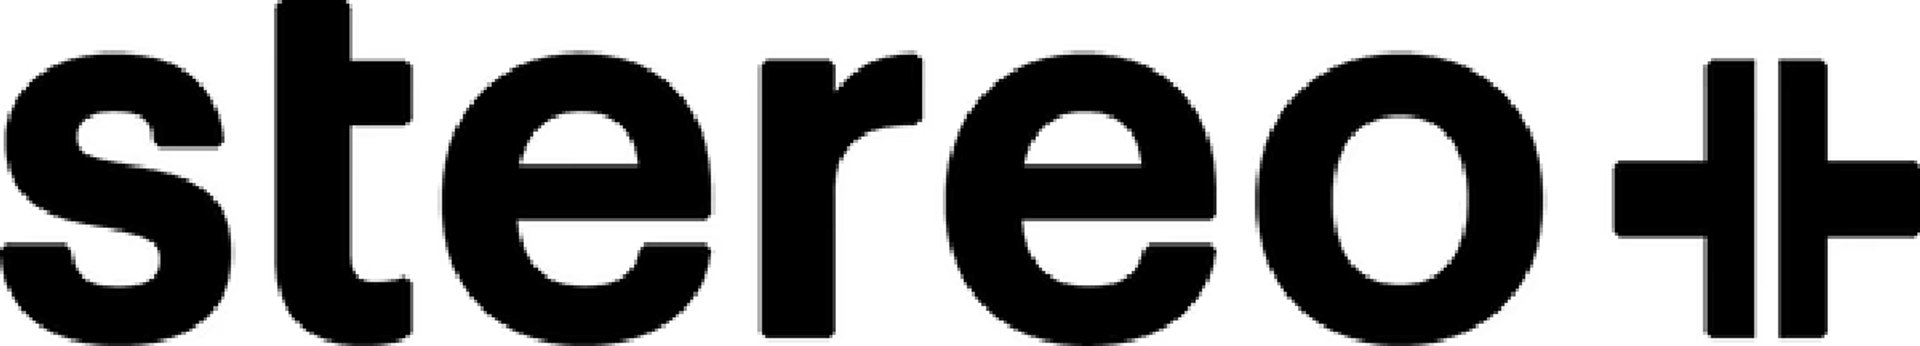 STEREO PLUS logo de circulaire